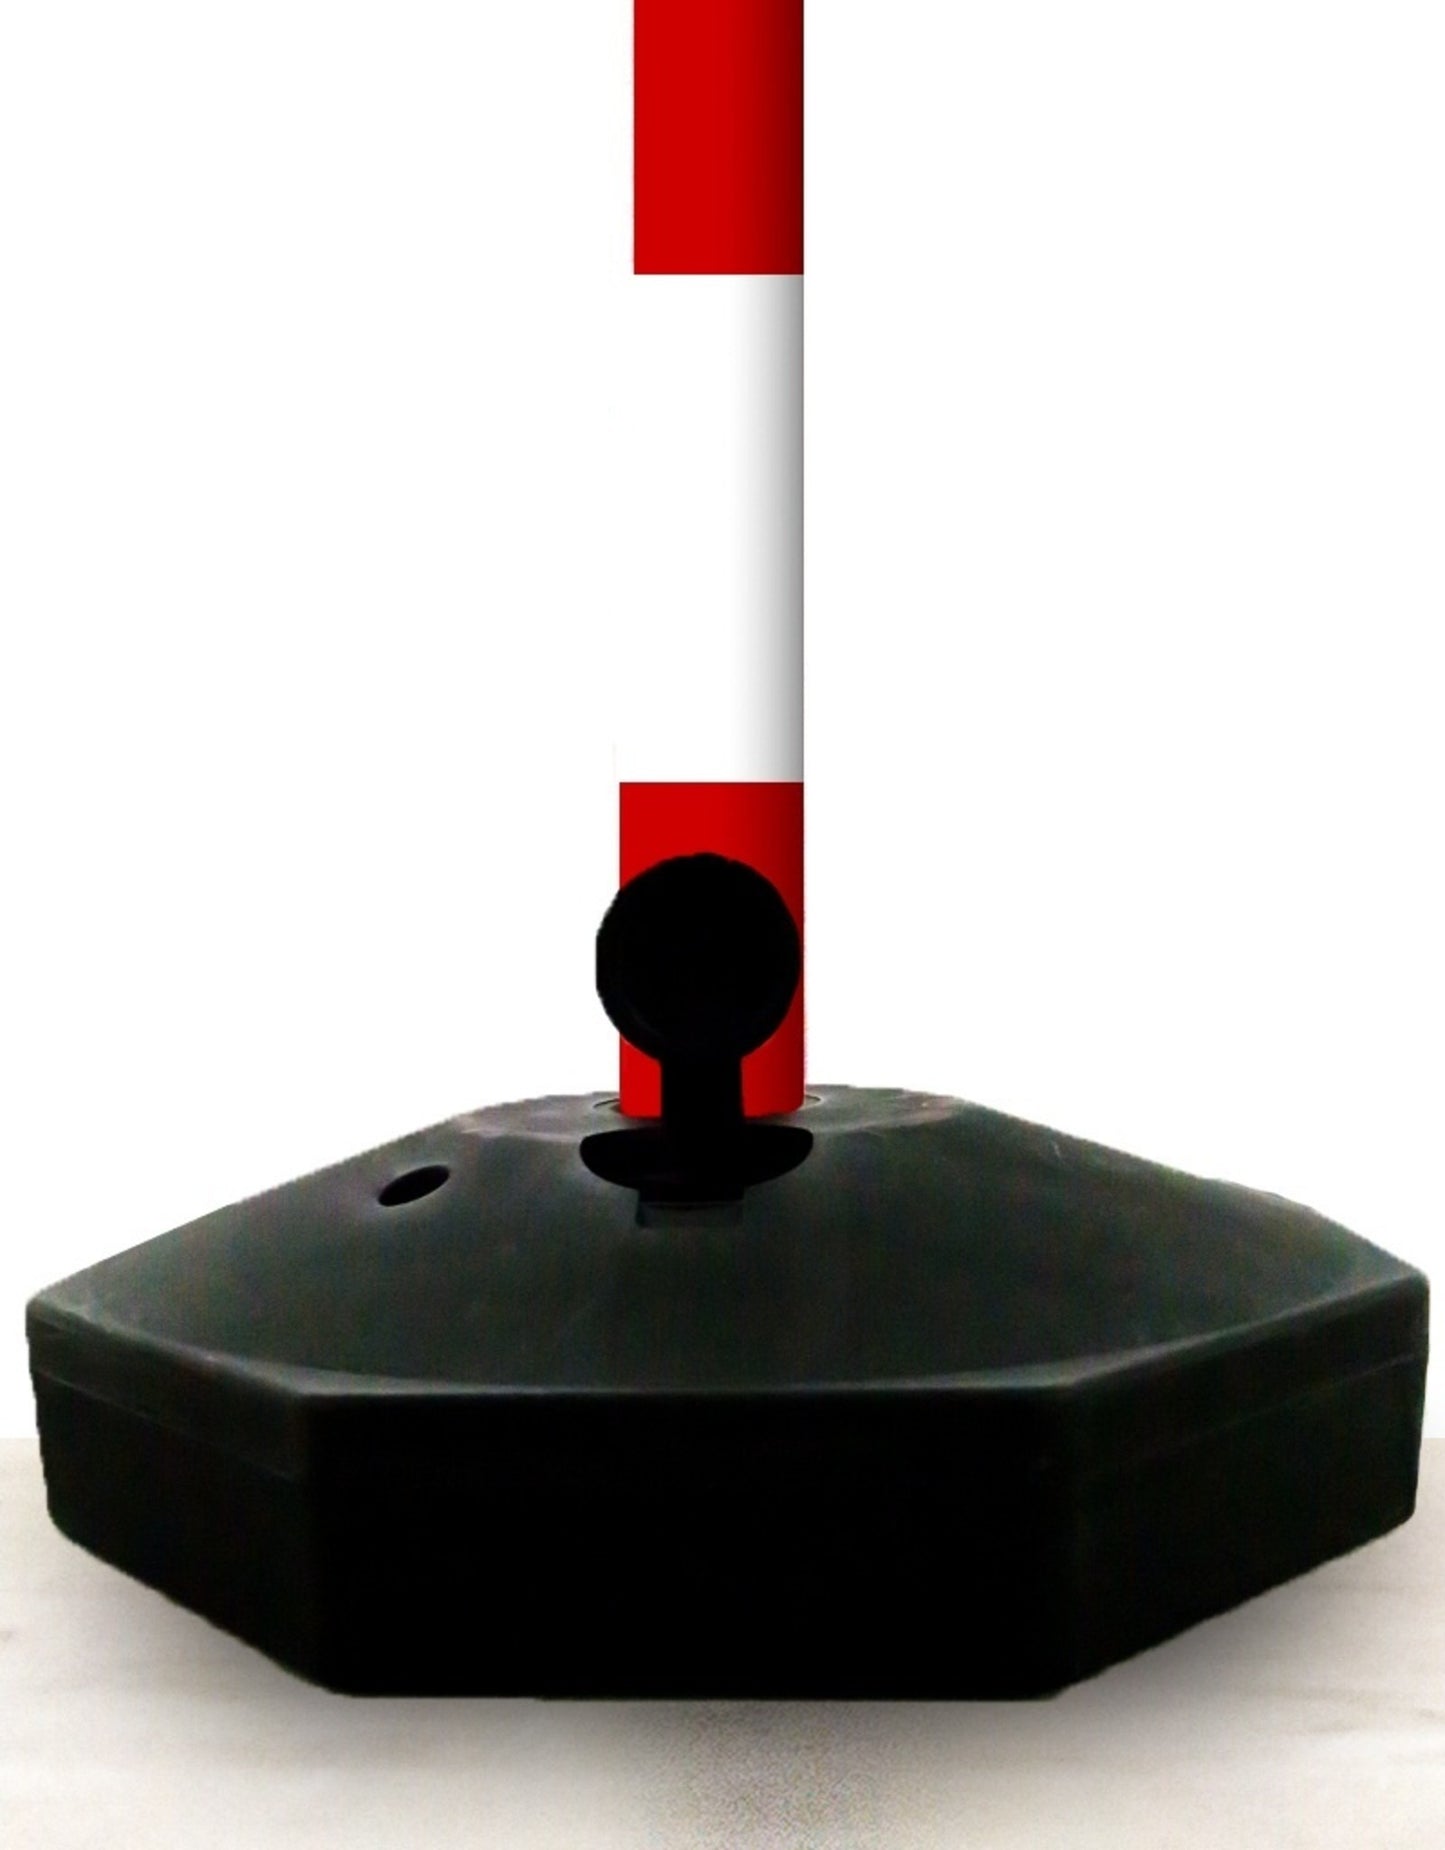 Poteau de balisage plastique, rouge / blanc, une base vide à lester